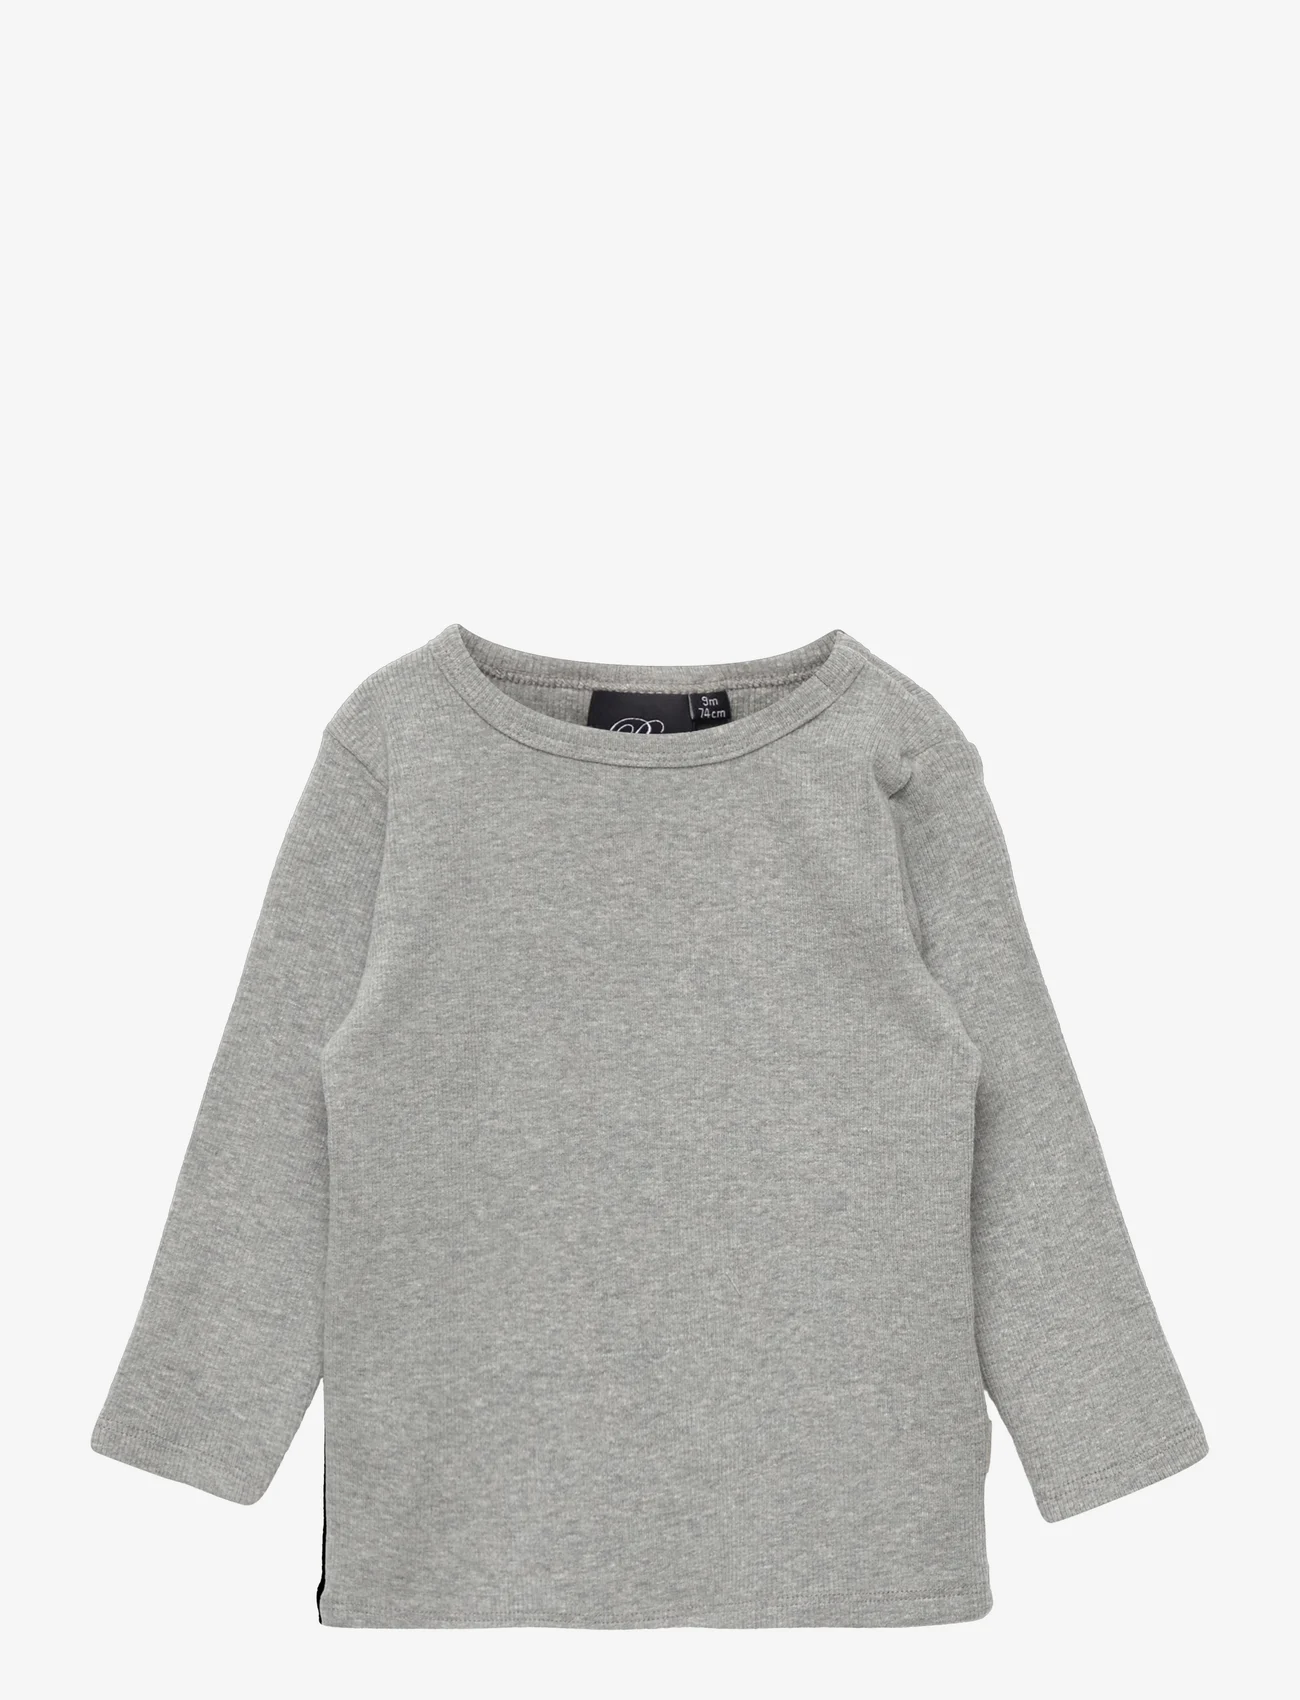 Sofie Schnoor Baby and Kids - T-shirt long-sleeve - pitkähihaiset t-paidat - grey melange - 0